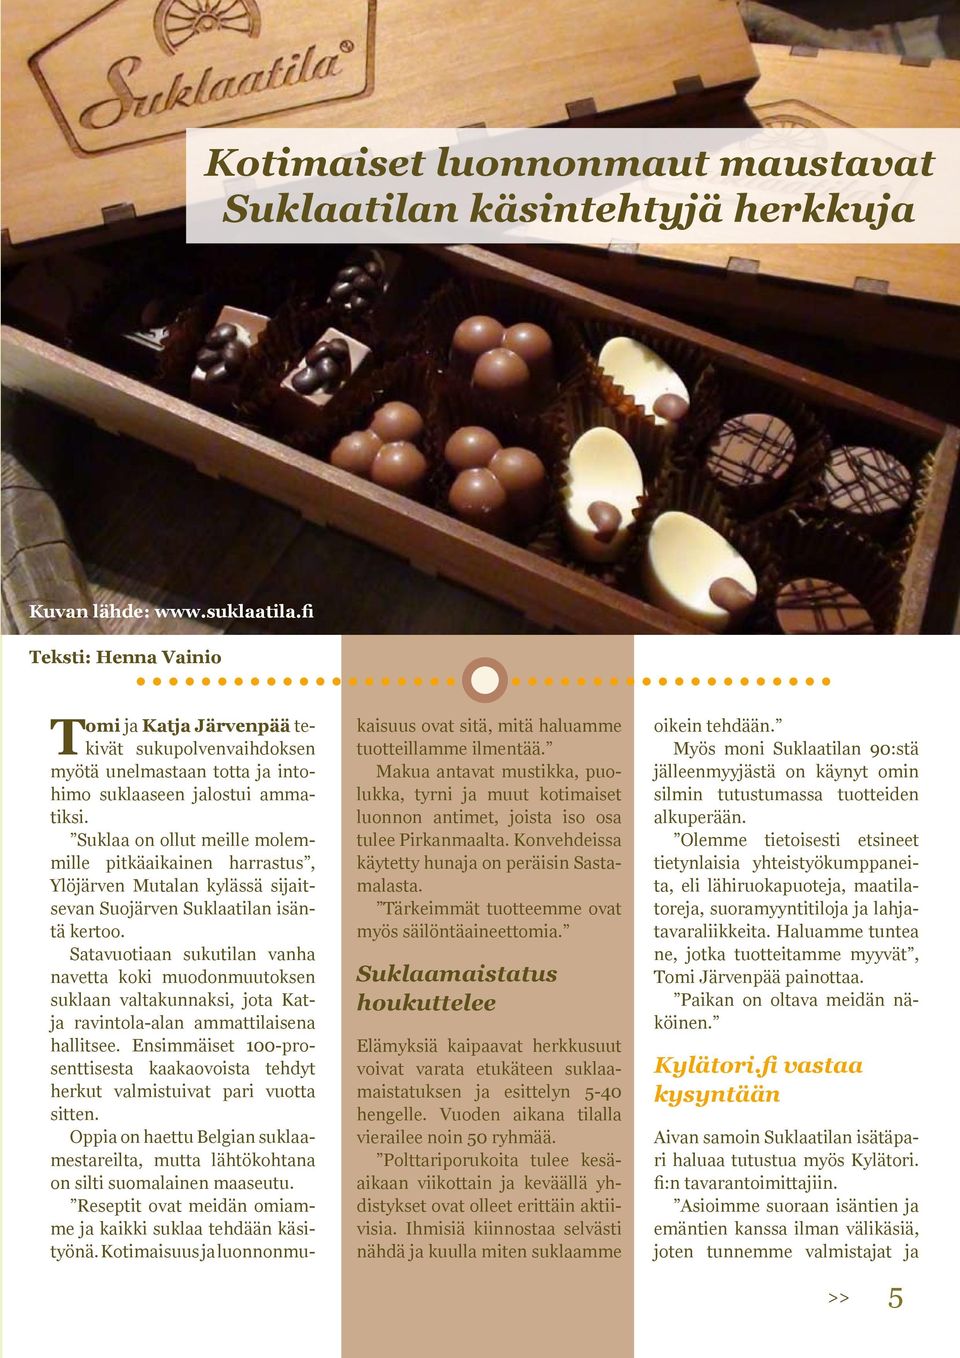 Suklaa on ollut meille molemmille pitkäaikainen harrastus, Ylöjärven Mutalan kylässä sijaitsevan Suojärven Suklaatilan isäntä kertoo.